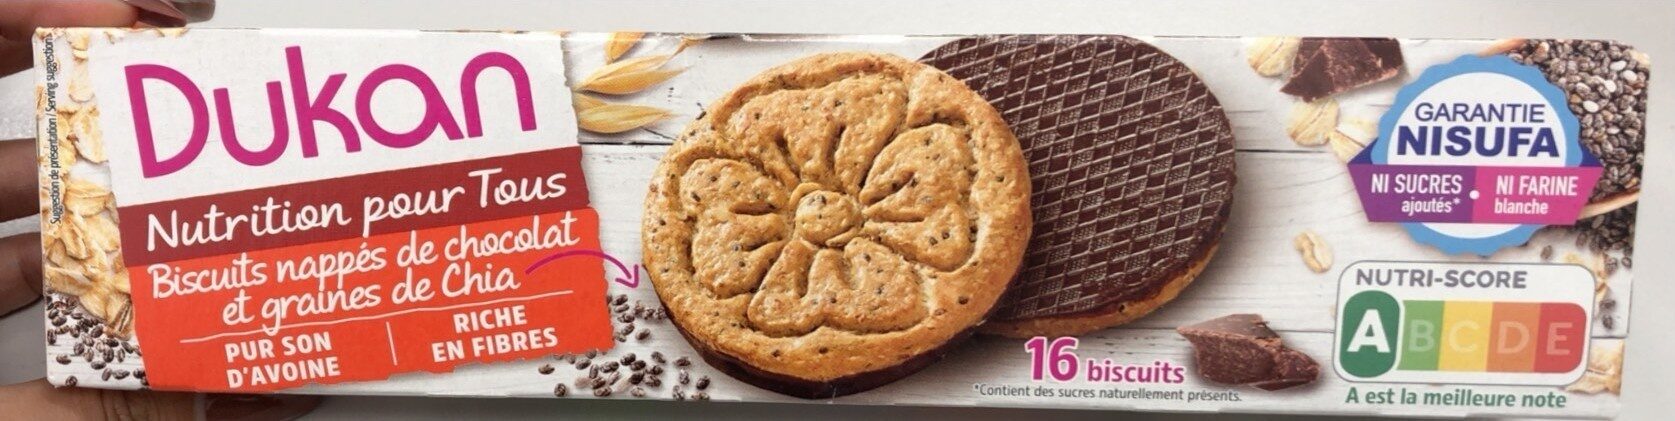 Biscuits nappés de chocolat - Produit - fr